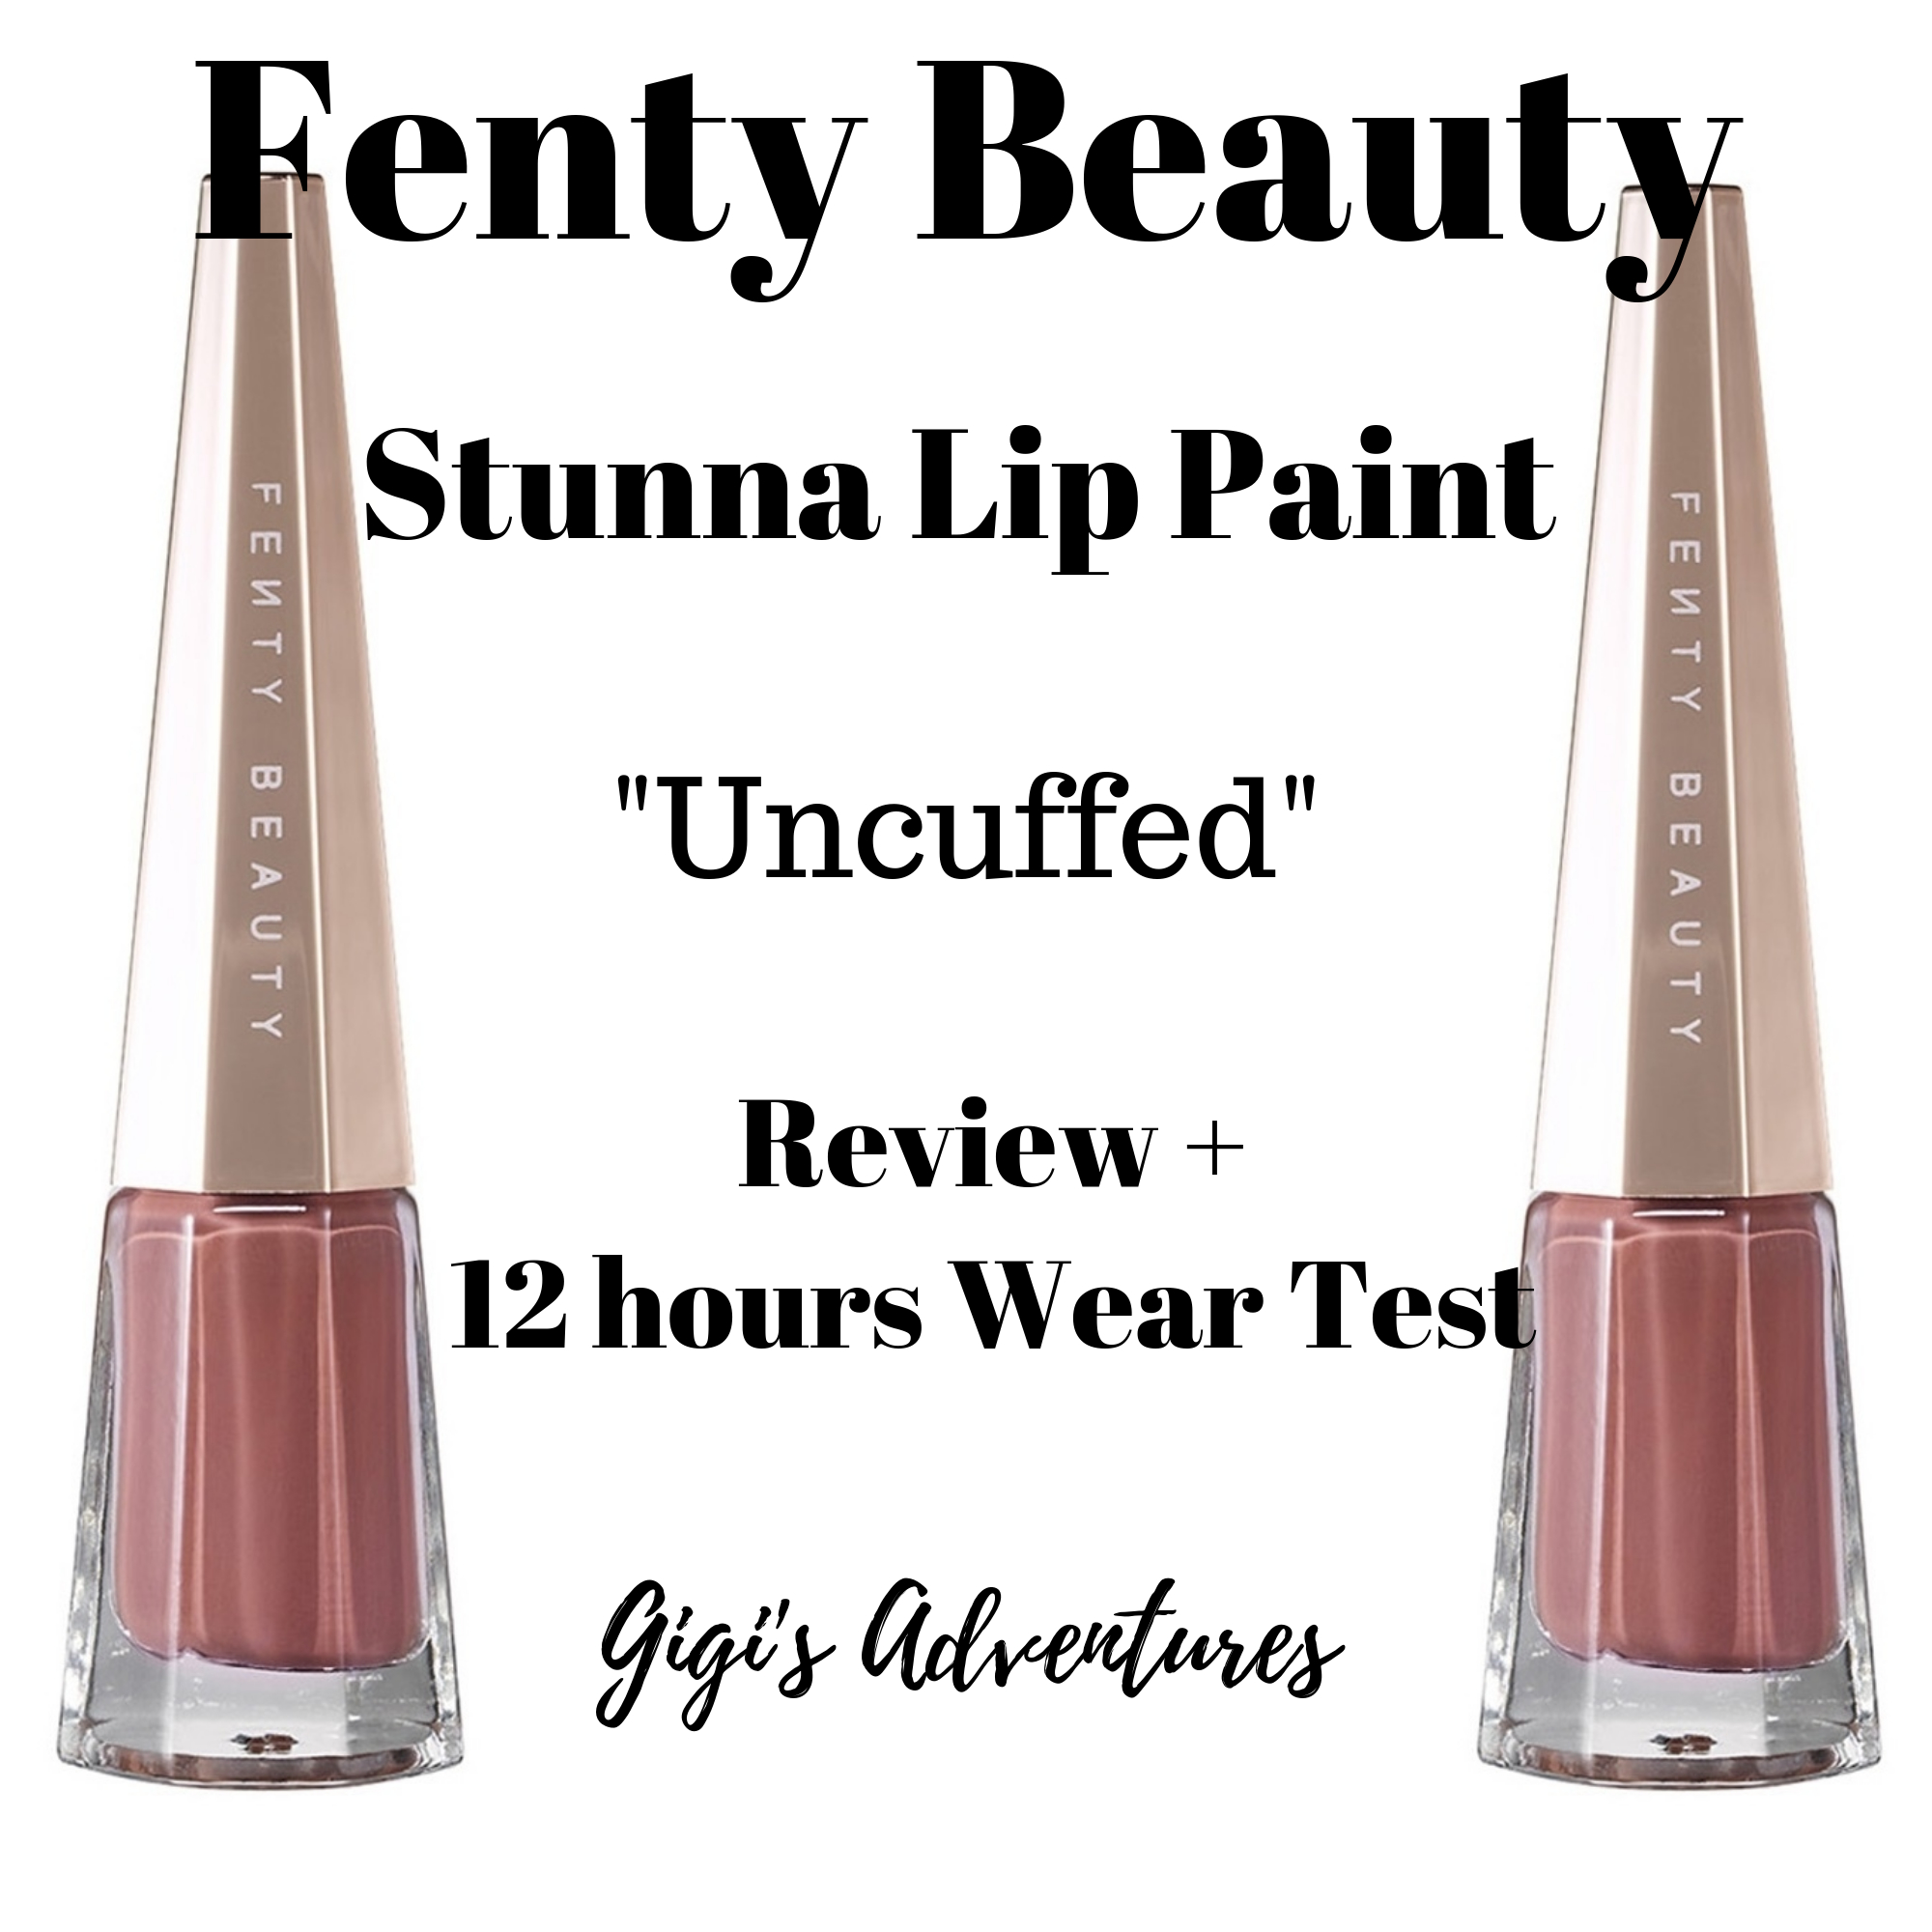 Fenty Beauty Stunna Lip Paint Uncuffed Review